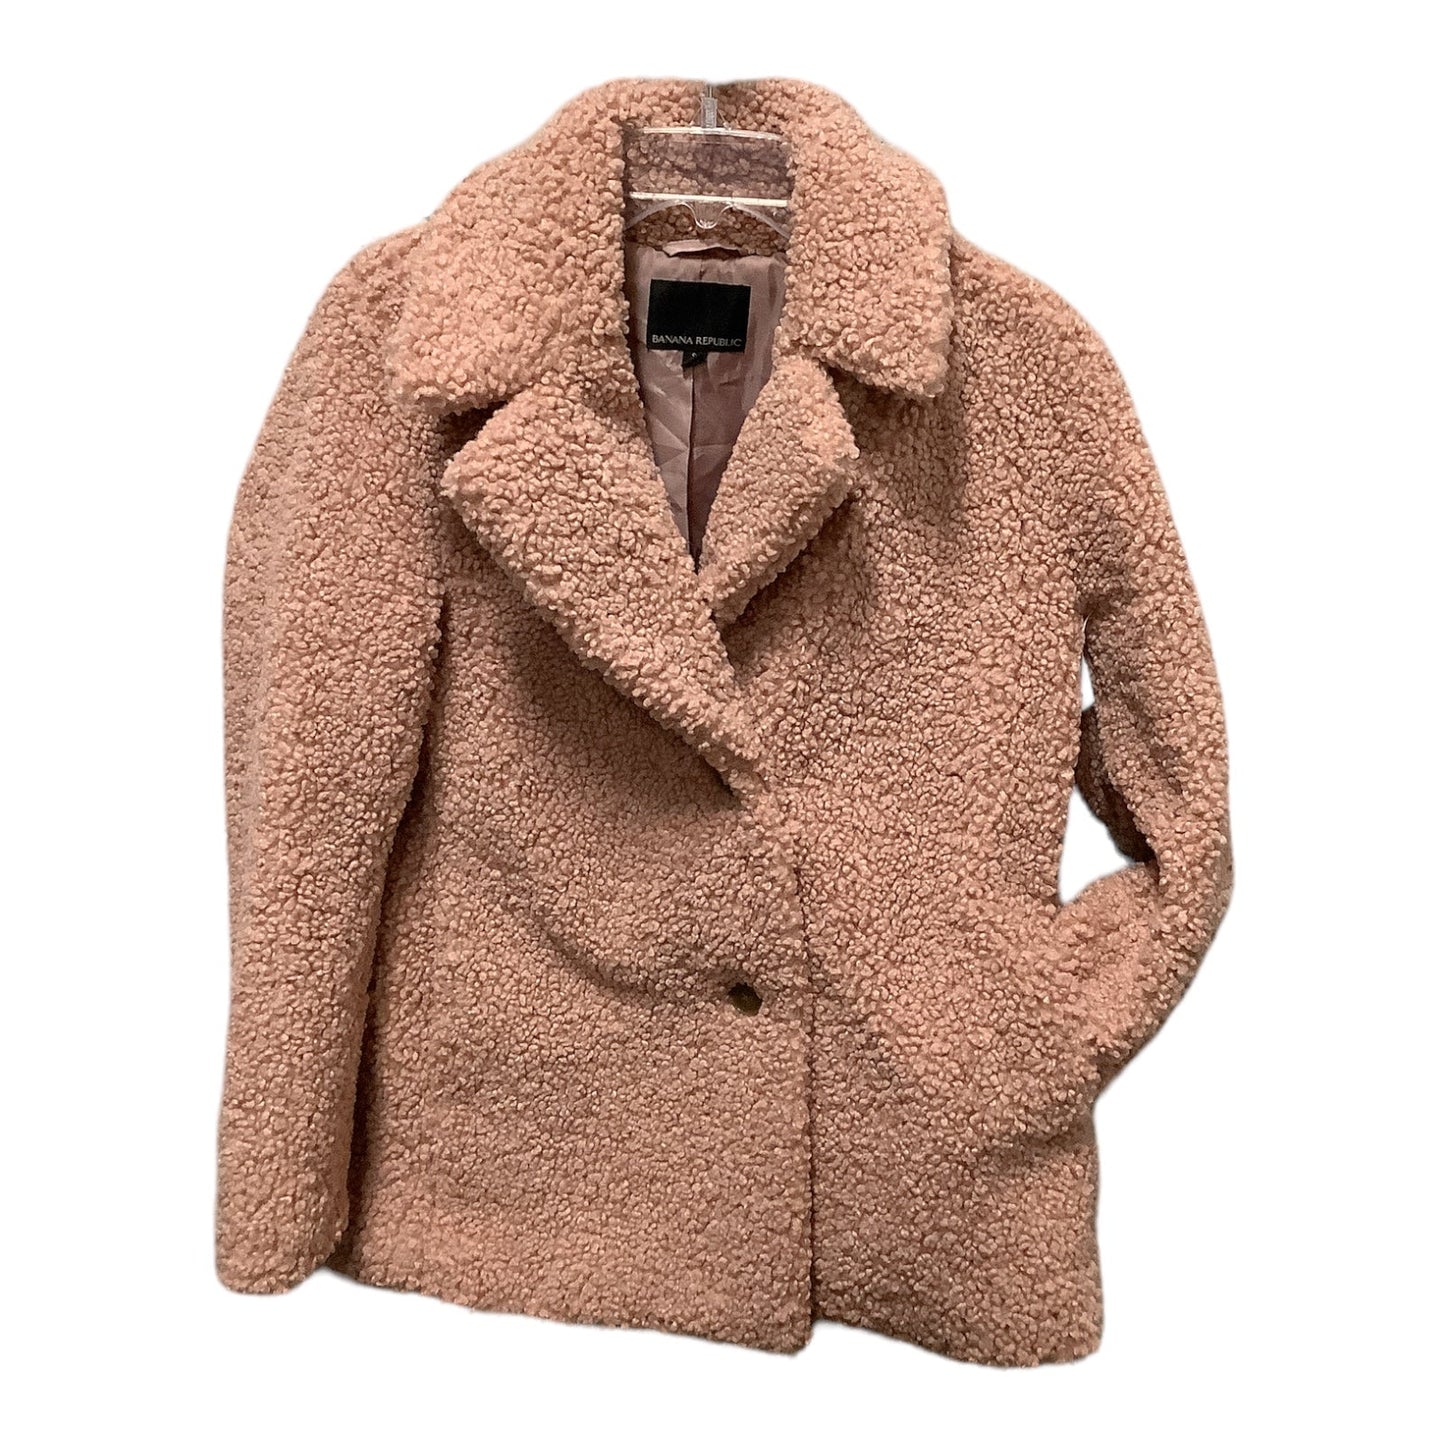 Coat Faux Fur & Sherpa By Banana Republic  Size: S